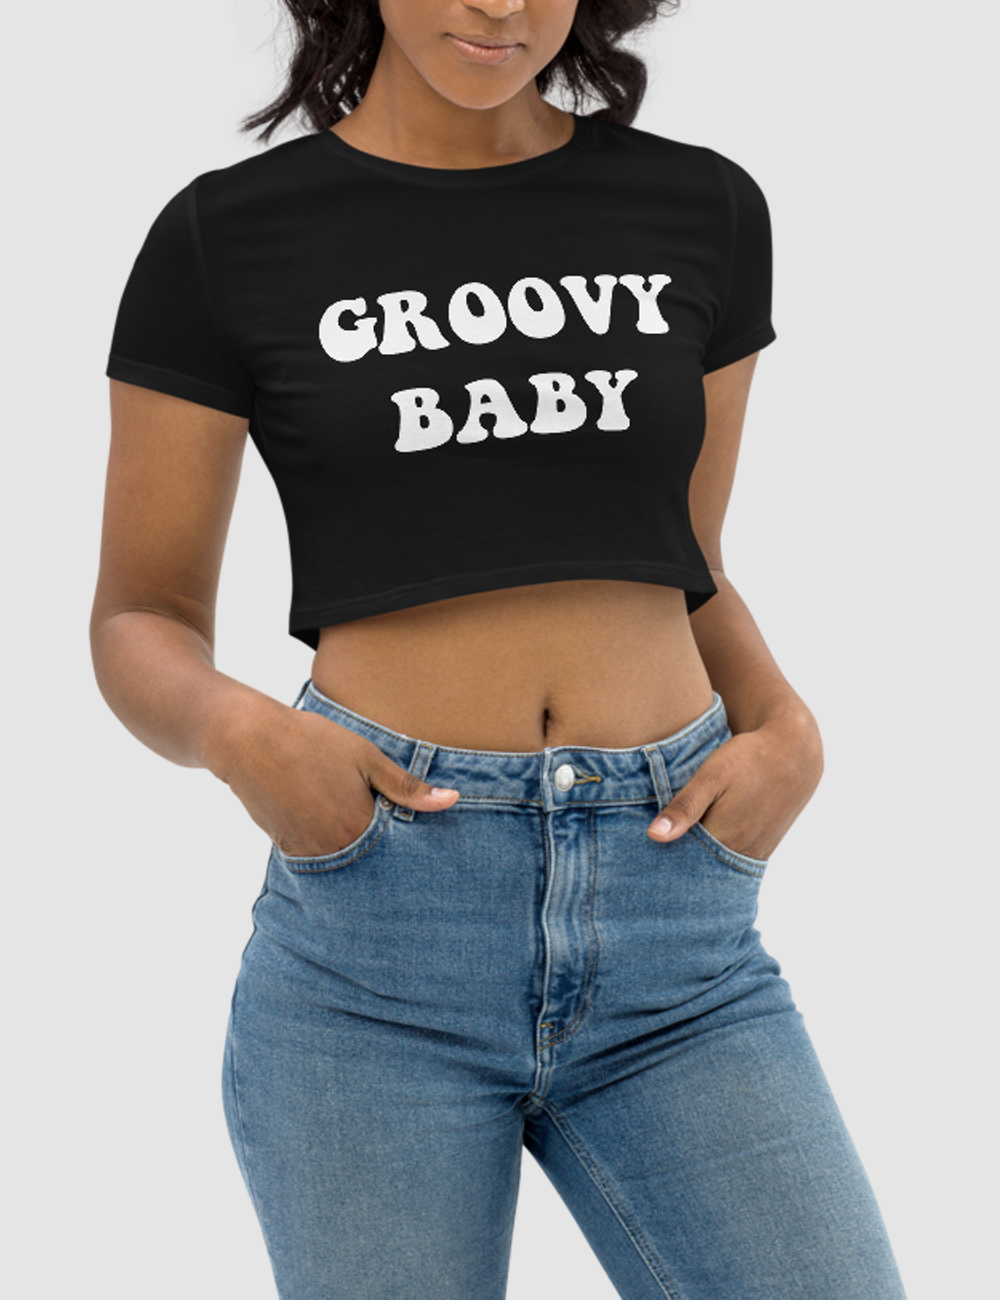 Groovy Baby | Women's Crop Top T-Shirt OniTakai